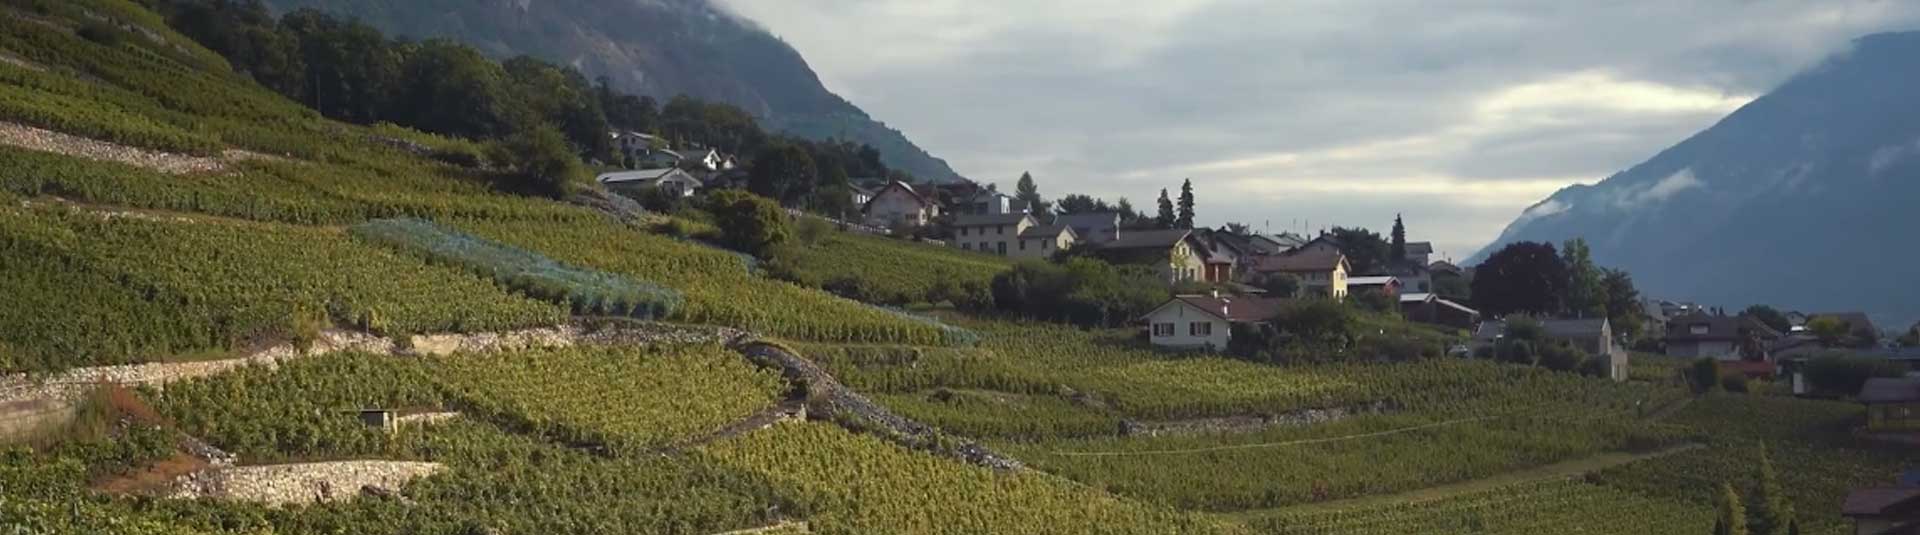 Vignoble du Valais en Suisse